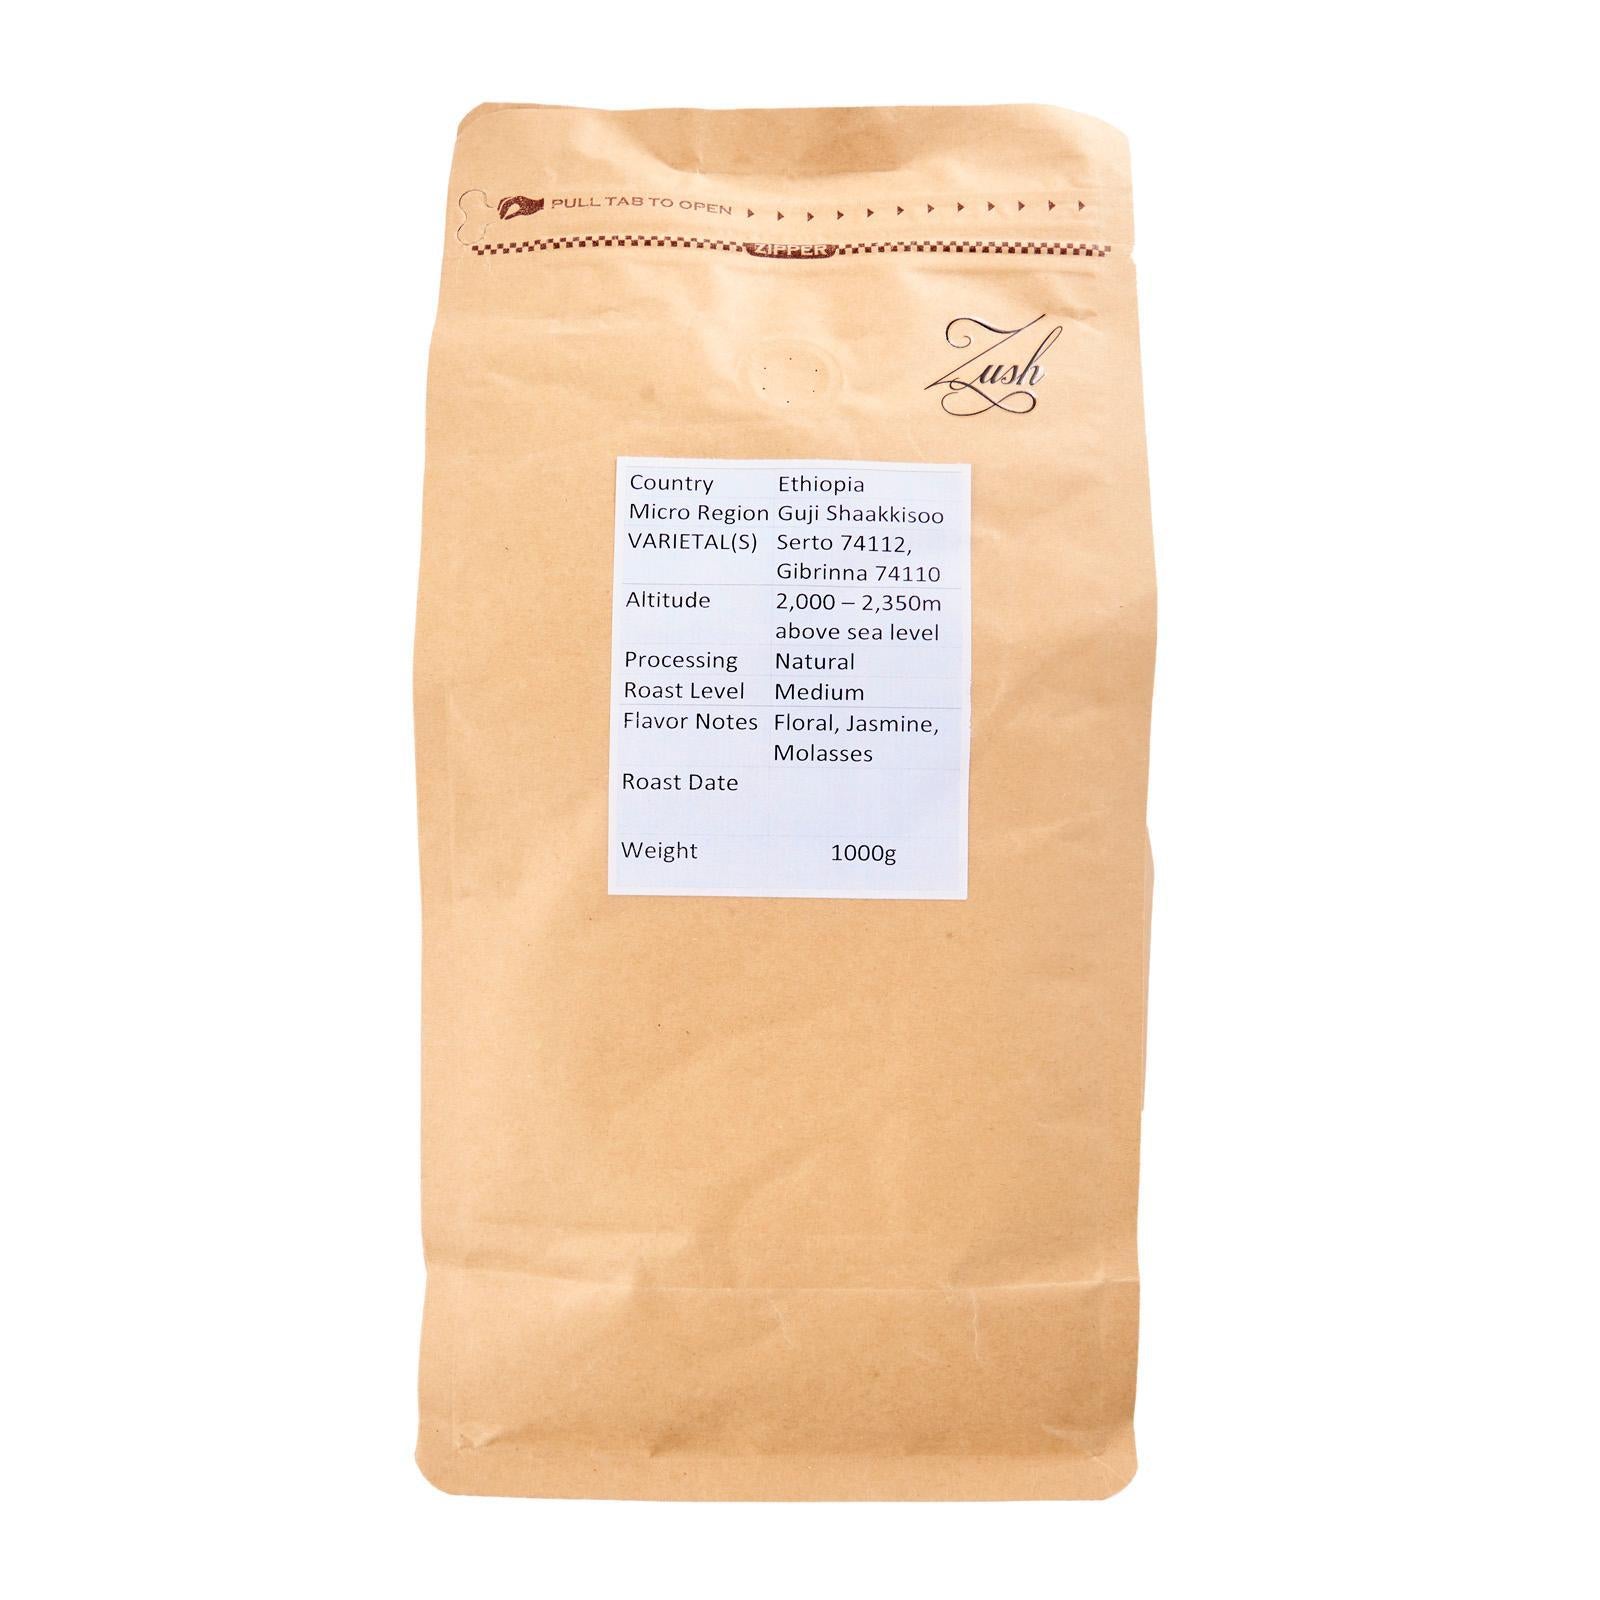 ZUSH Coffee - เมล็ดกาแฟชนิดพิเศษ อาราบิก้า 100% คั่วเป็นกลุ่ม เอธิโอเปีย กูจิ ชาคคิซู